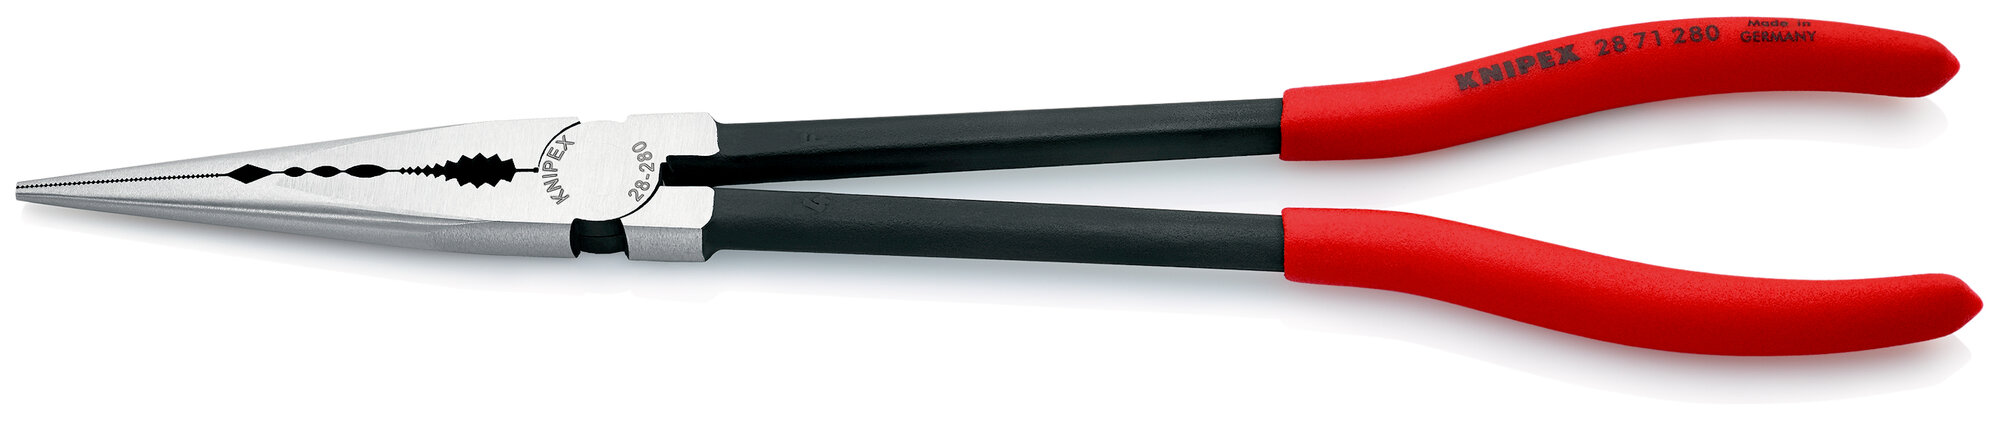 Плоскогубцы KNIPEX монтажные юстировочные, для труднодоступных мест, 280 мм, фосфатированные, обливные ручки KN-2871280